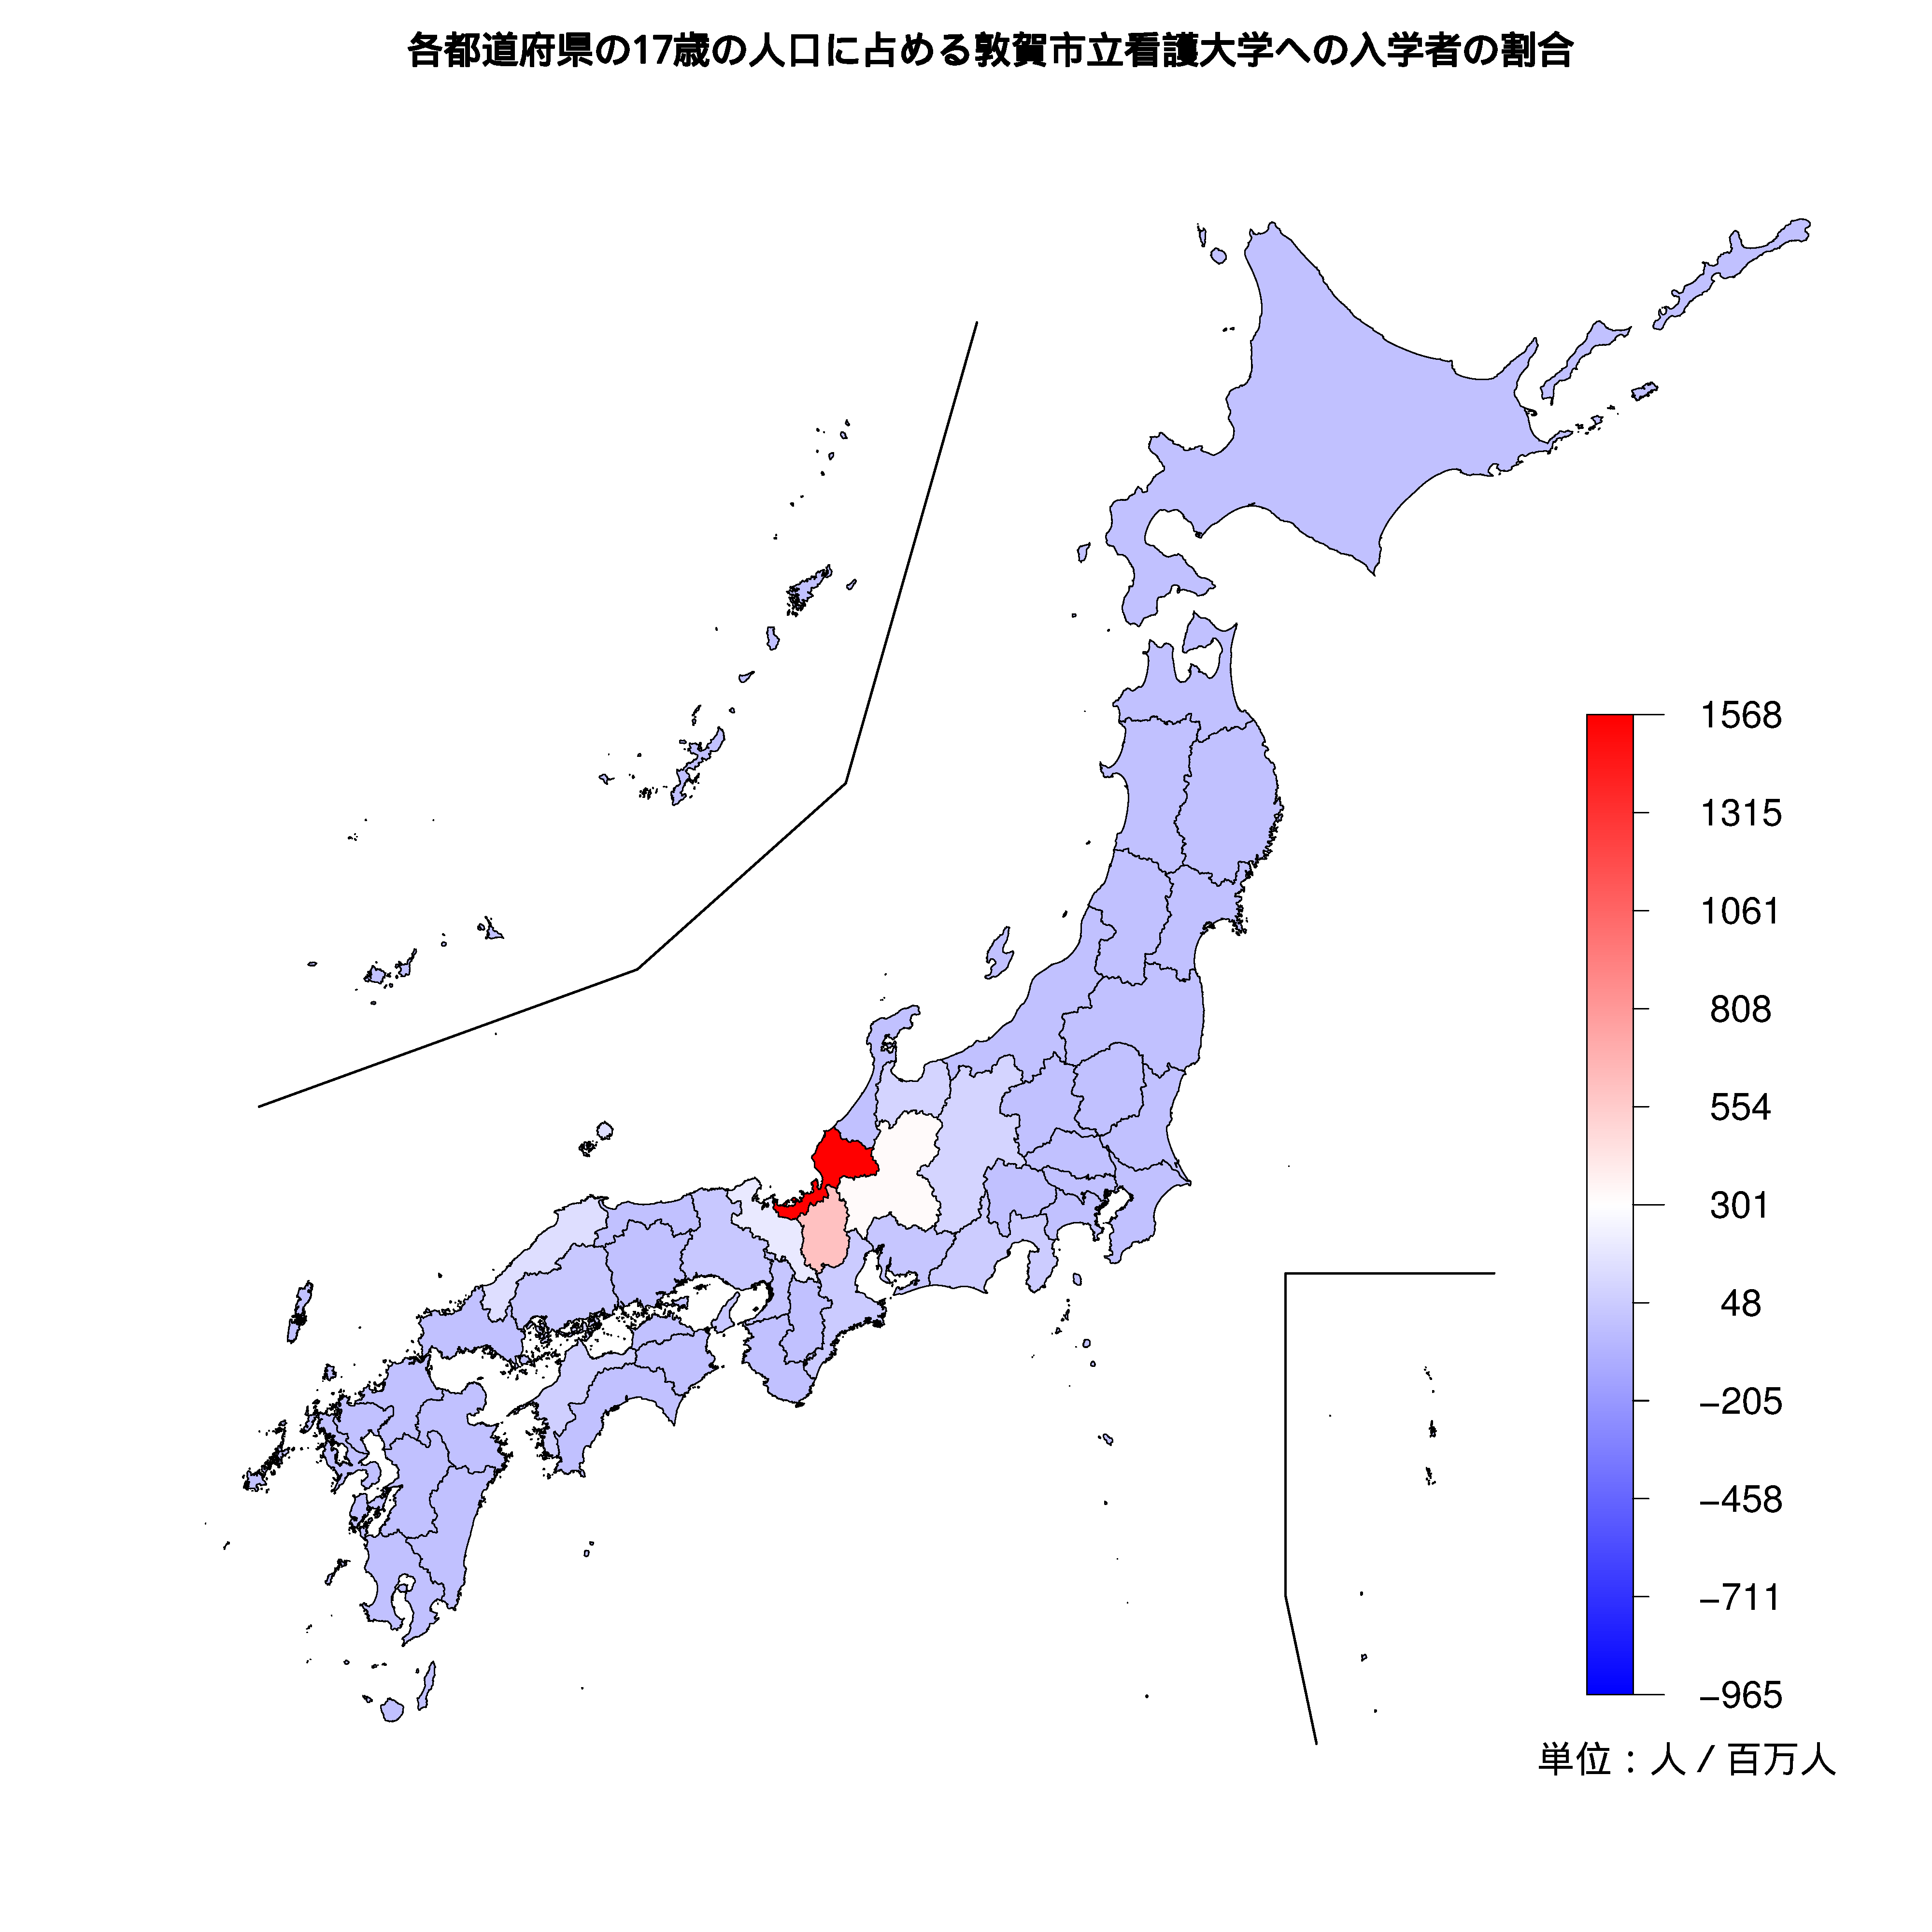 敦賀市立看護大学への入学者が多い都道府県の色分け地図